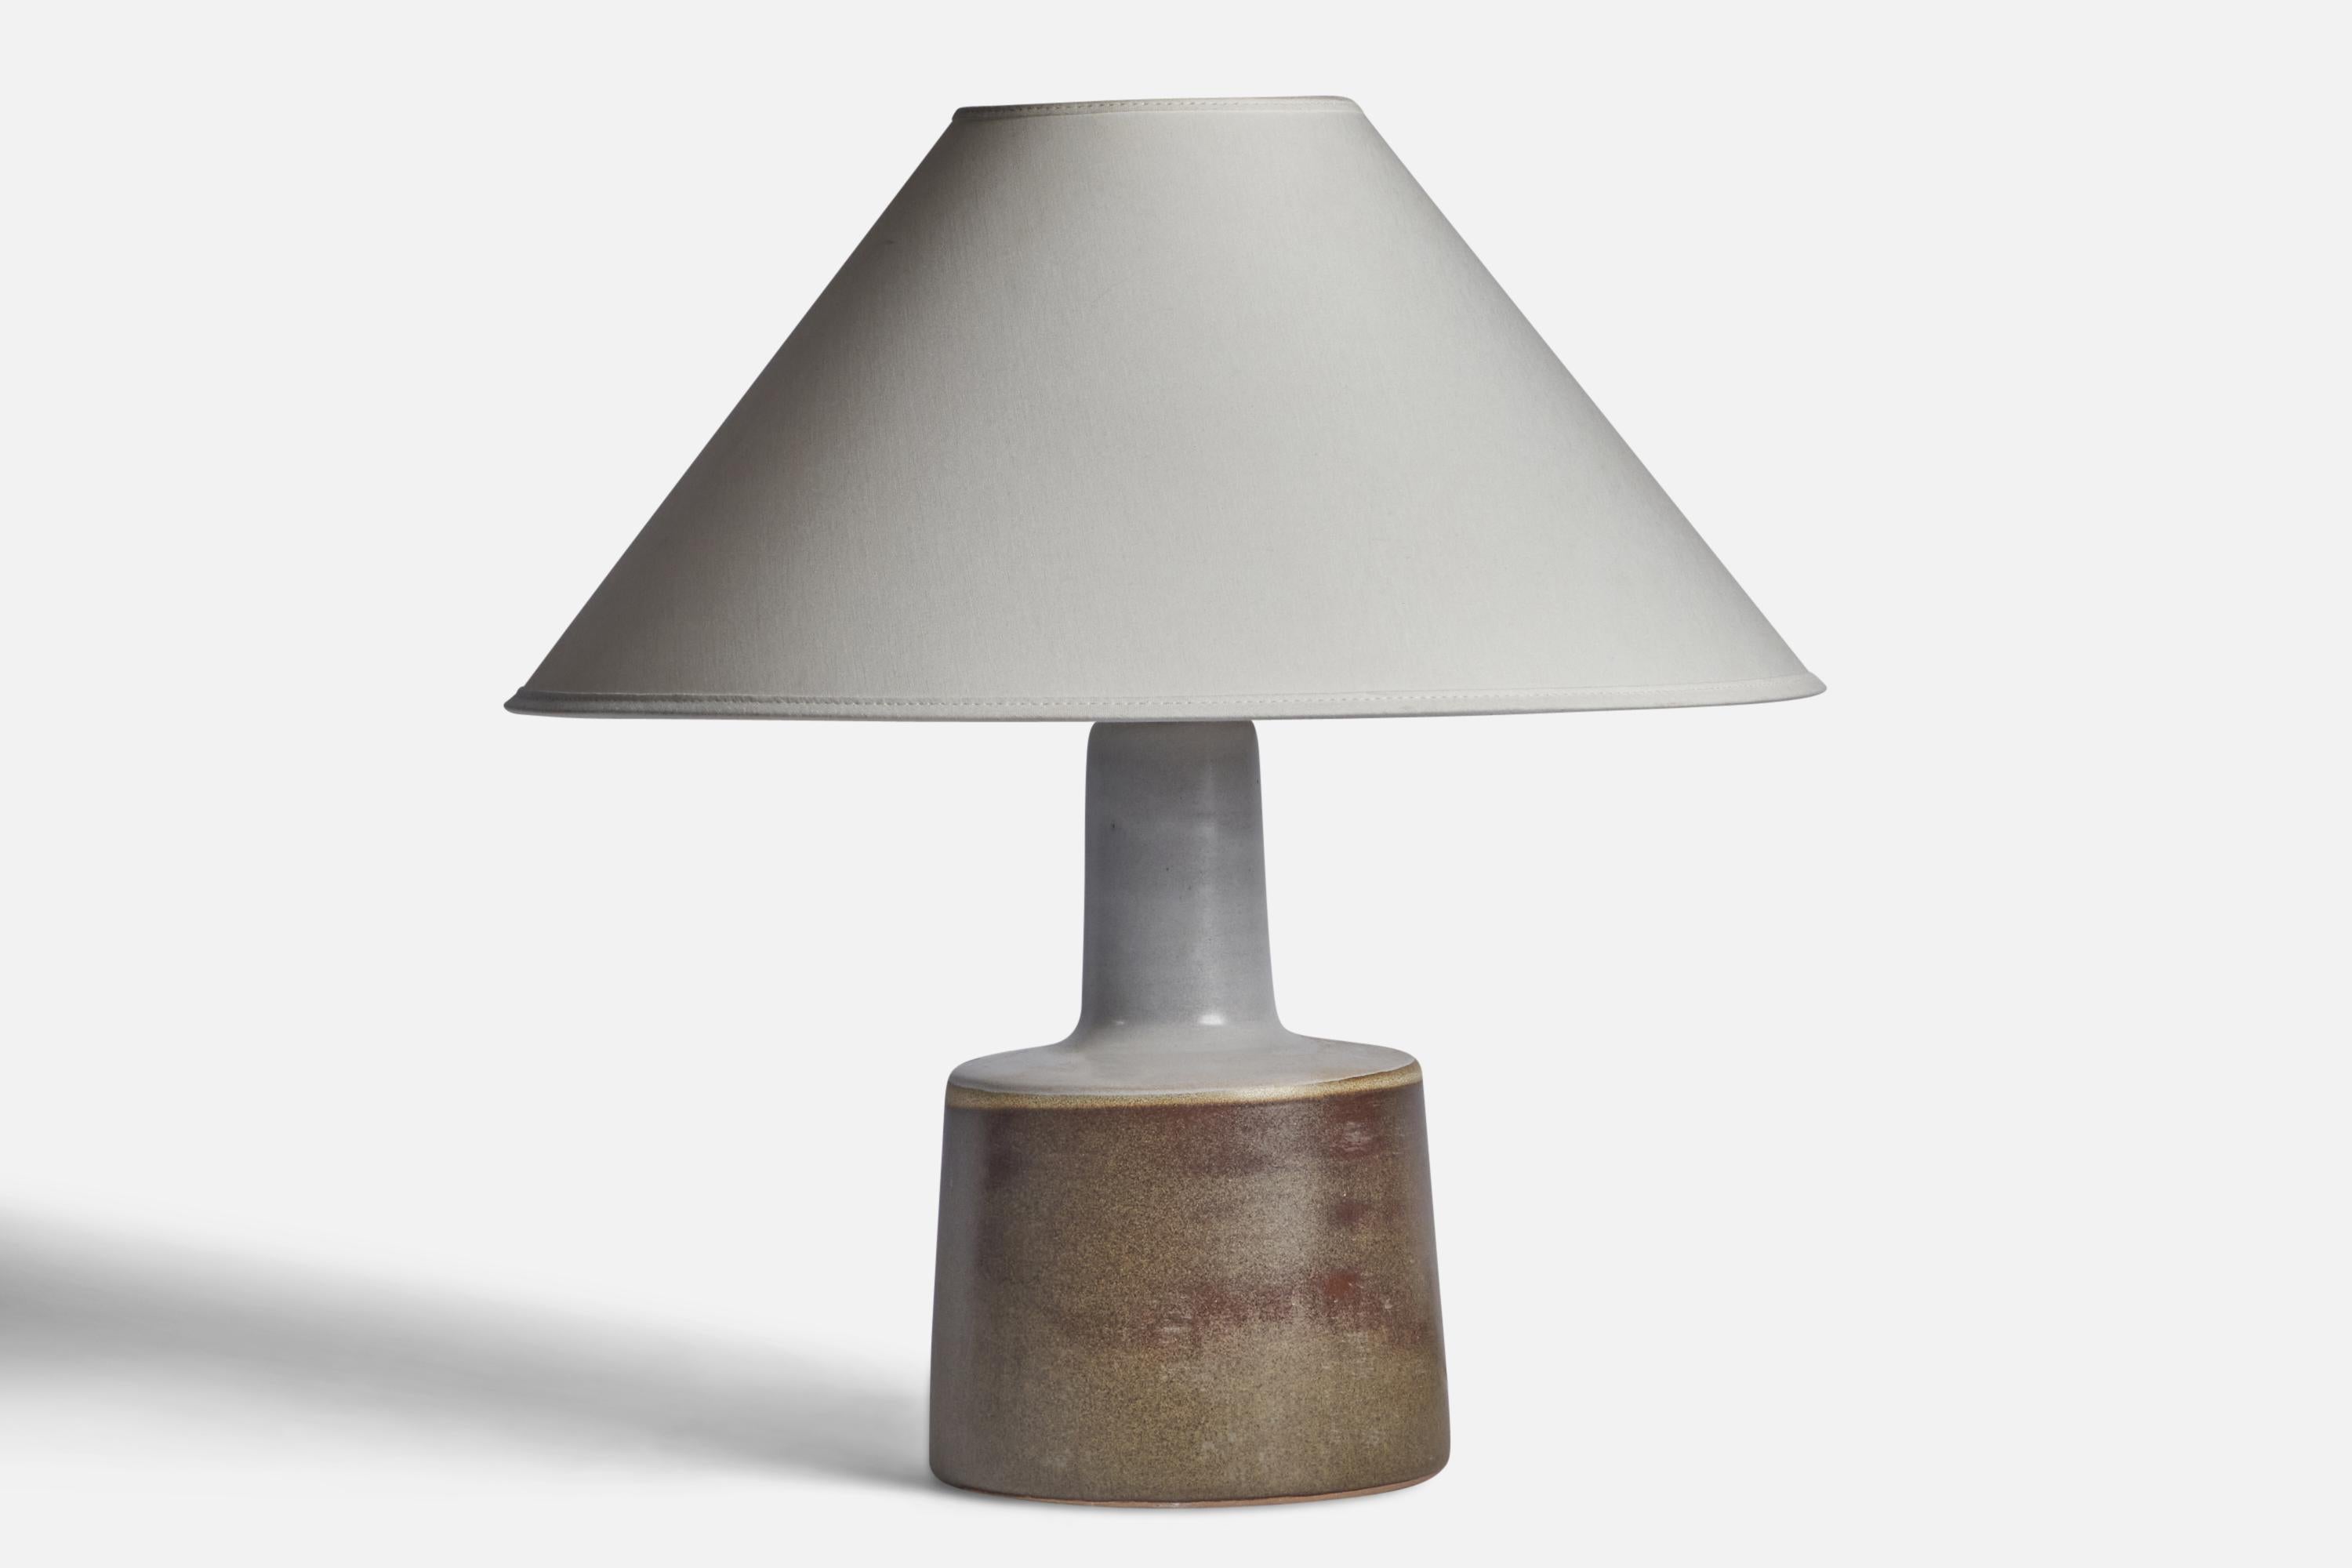 Lampe de table en céramique grise et émaillée brune, conçue par Jane & Gordon Martz et produite par Marshall Studios, États-Unis, années 1960.

Dimensions de la lampe (pouces) : 12.25